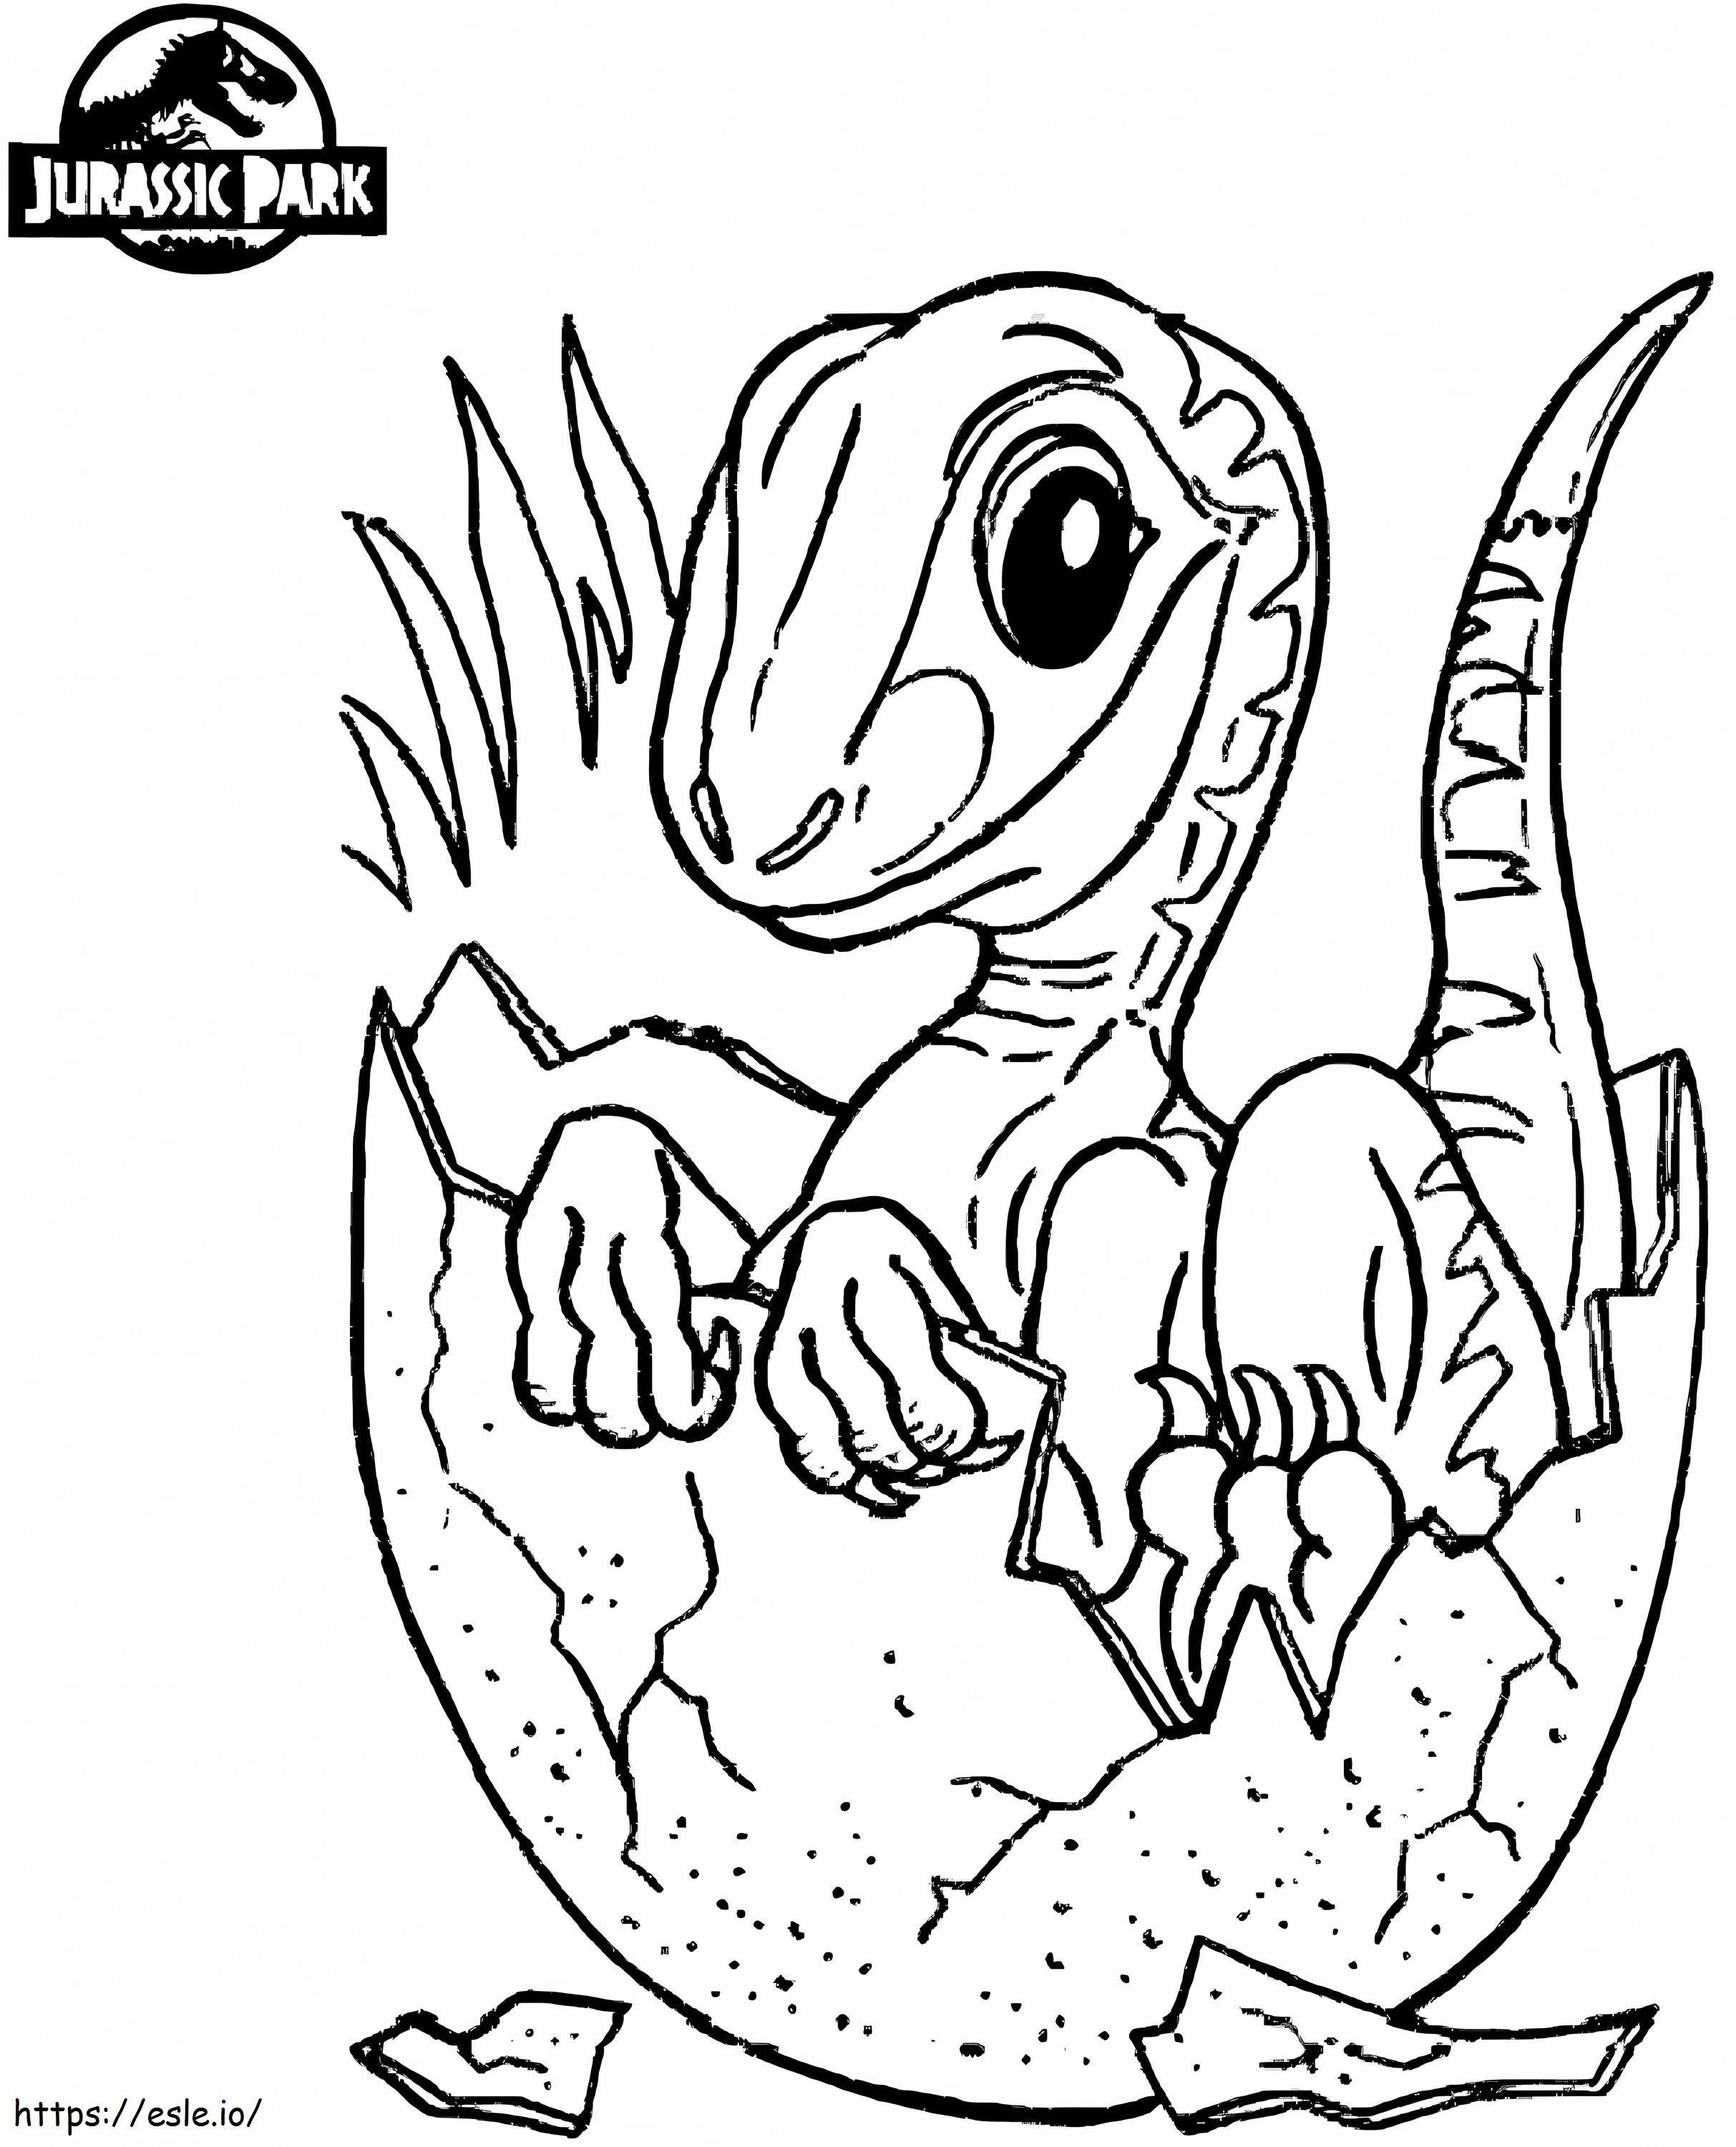 1566805000 Baby-Dinosaurier in Jurassic World A4 ausmalbilder